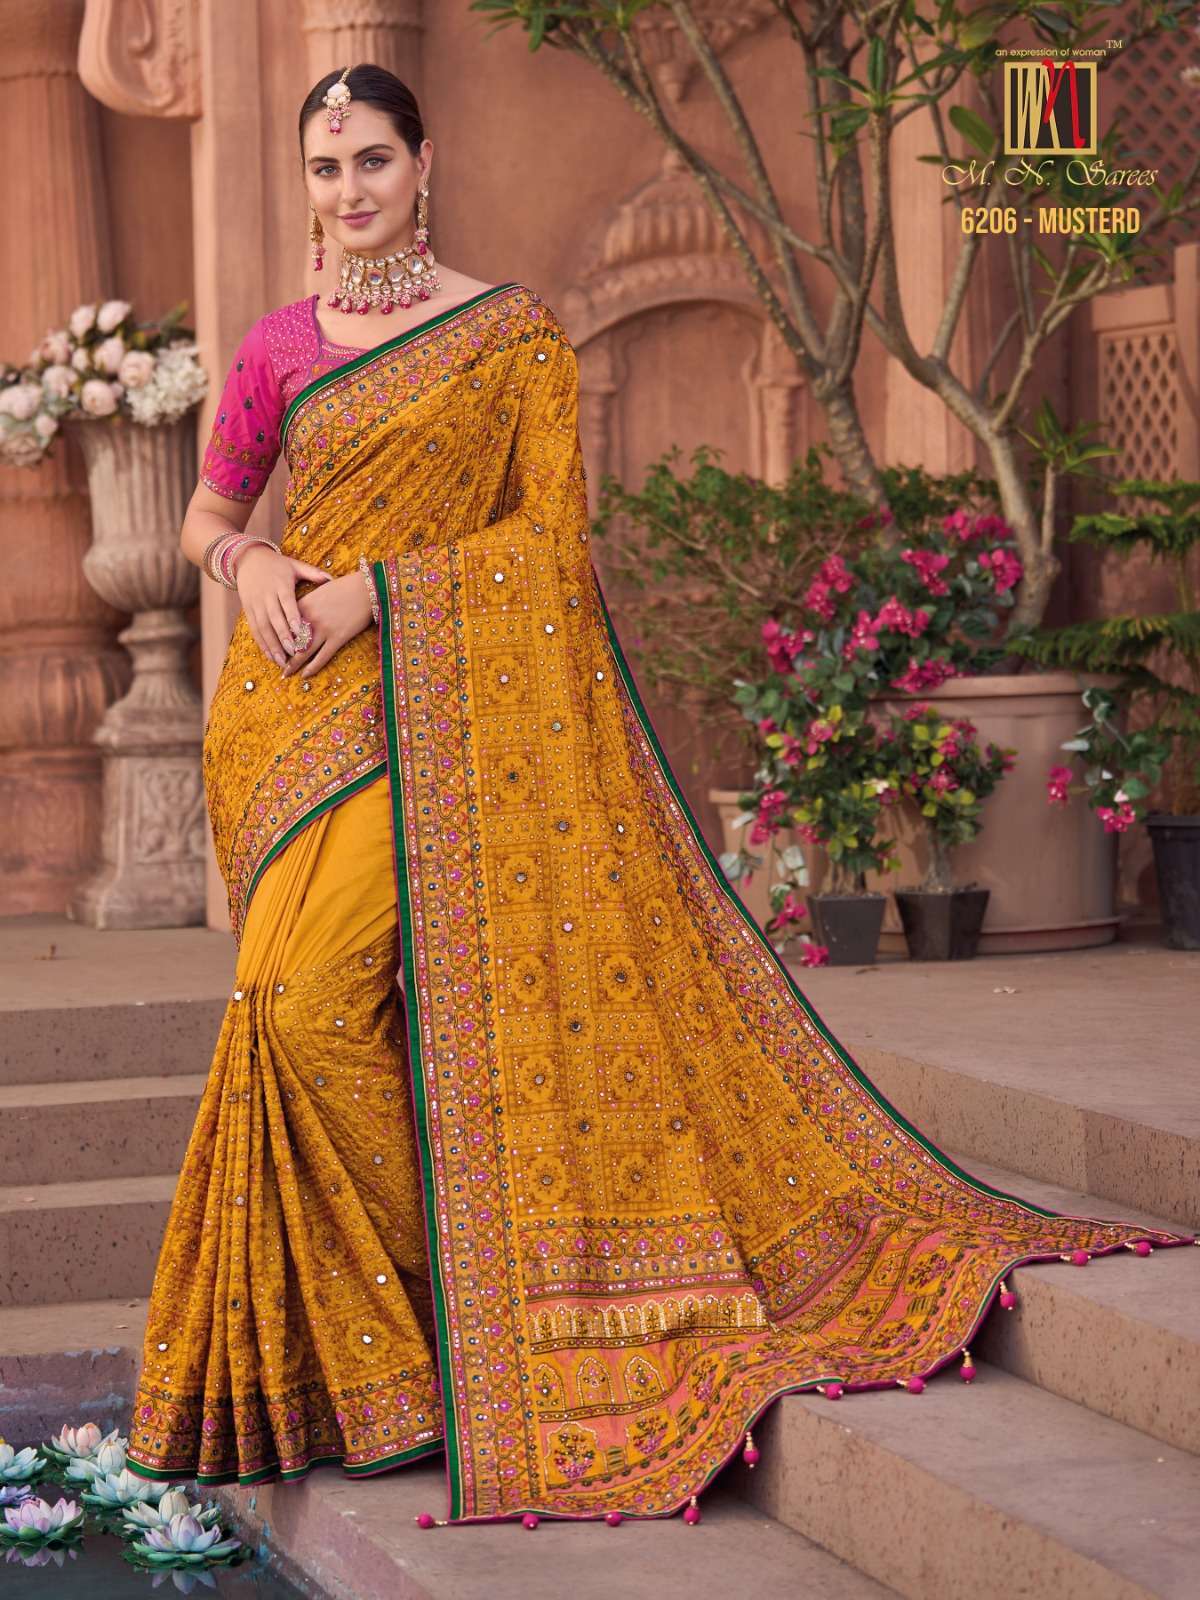 Mn sarees 6206 Colors Banarasi silk with handwork Designer s...